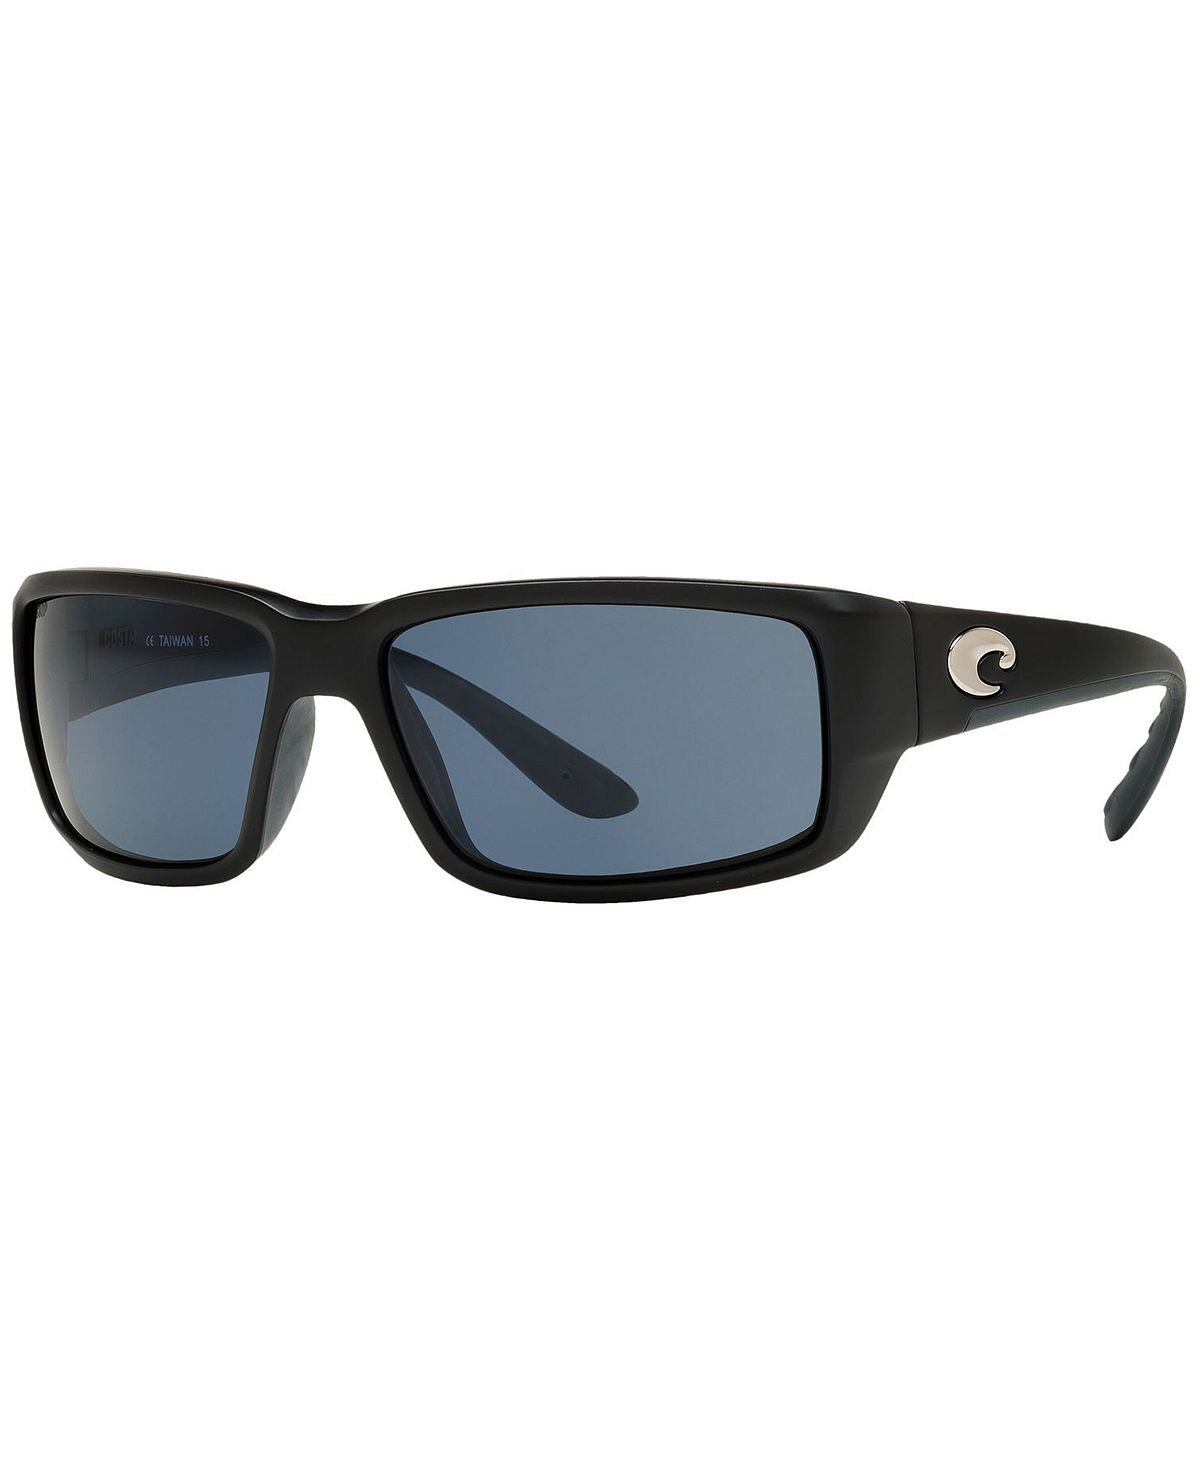 Поляризованные солнцезащитные очки FANTAIL POLARIZED 59P Costa Del Mar